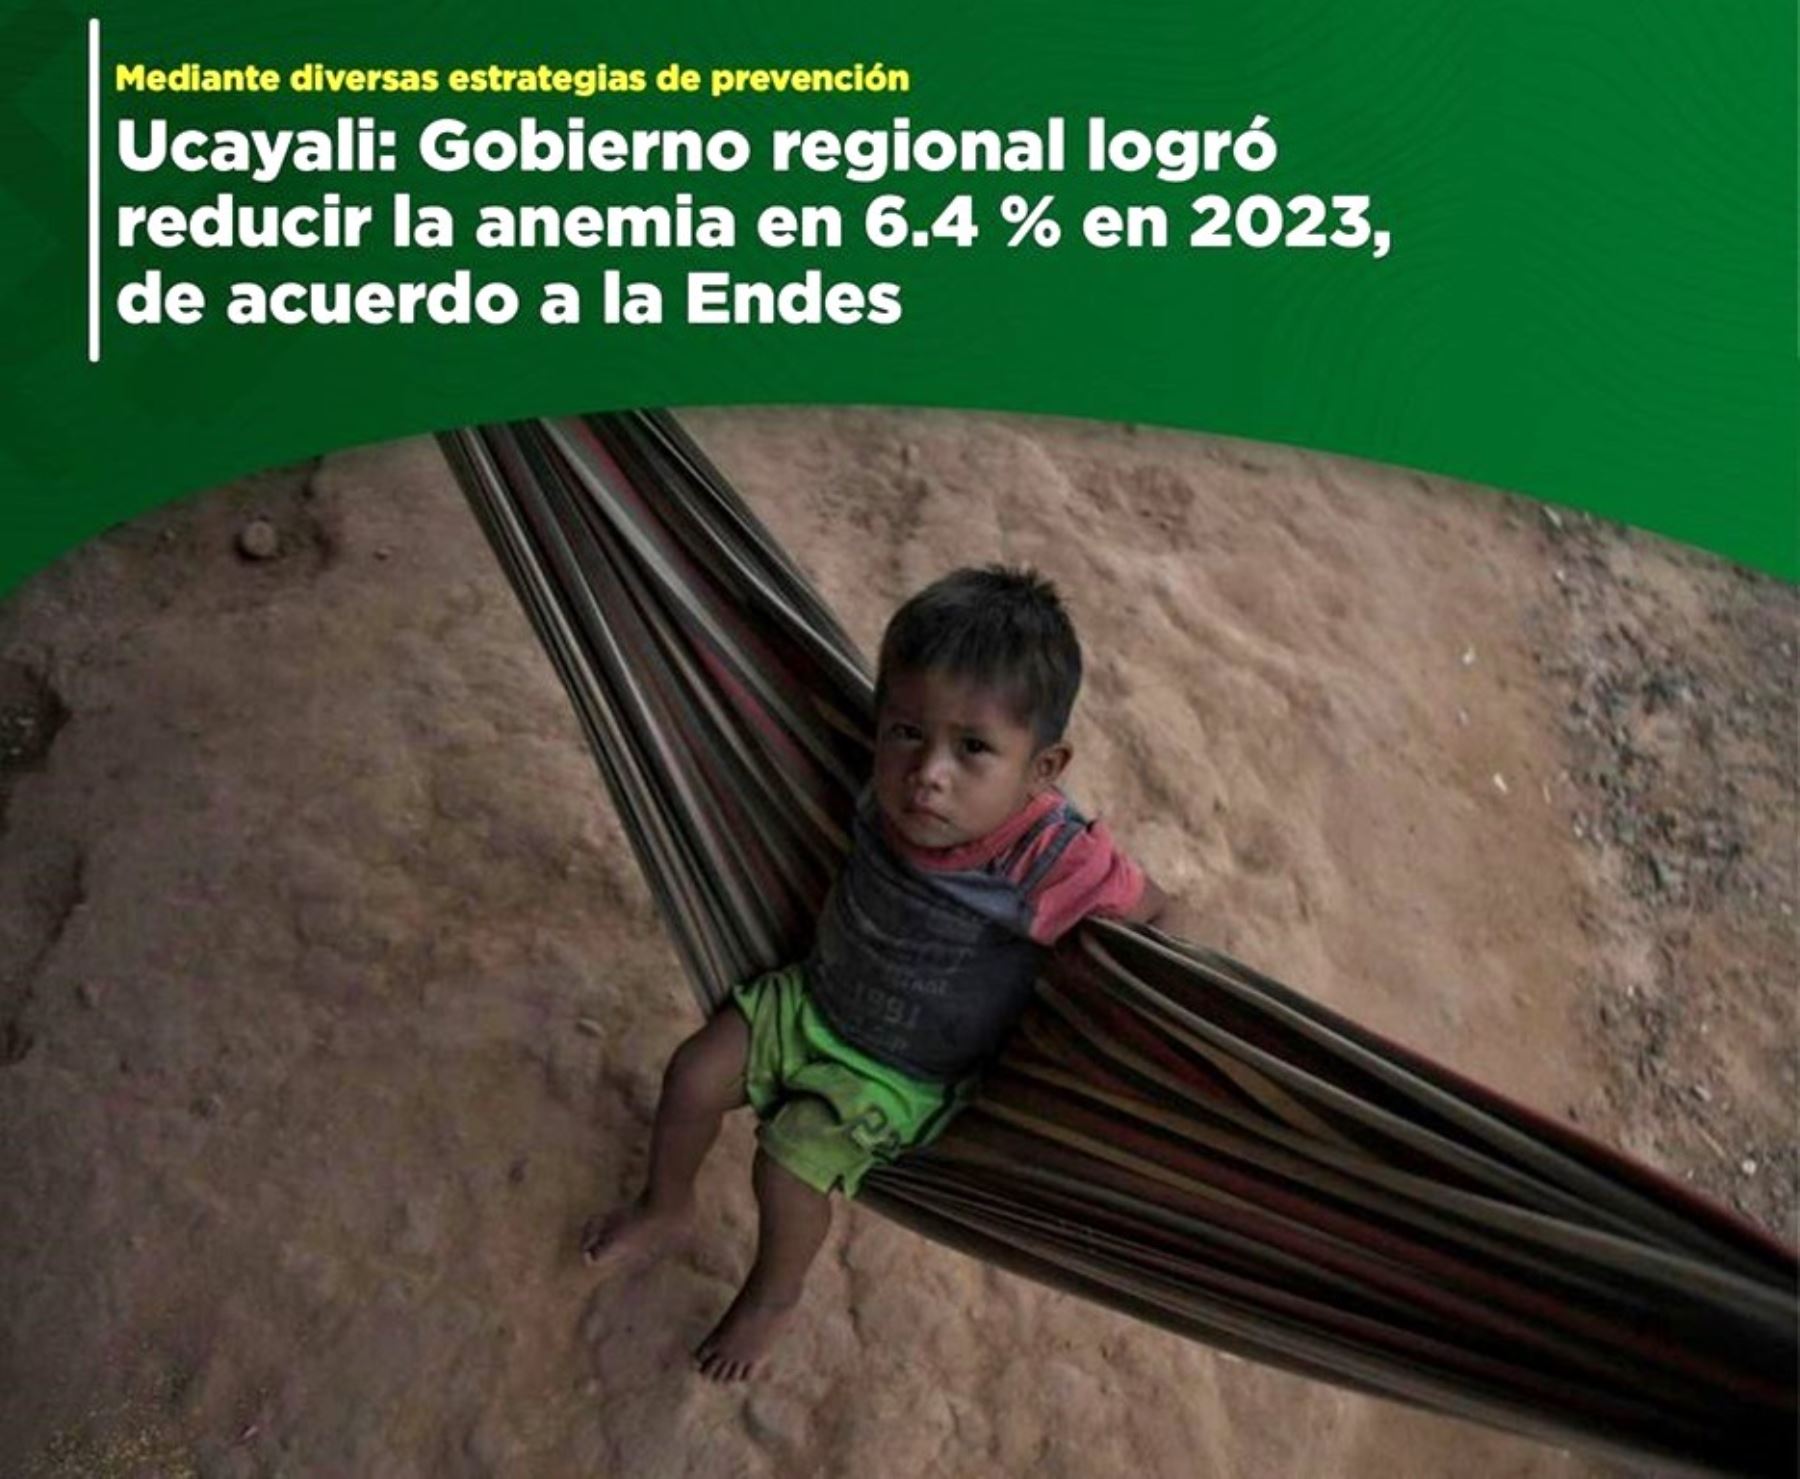 En solo un año, la región Ucayali logró disminuir en 6.4 puntos porcentuales el índice de anemia en niños de 6 a 35 meses.